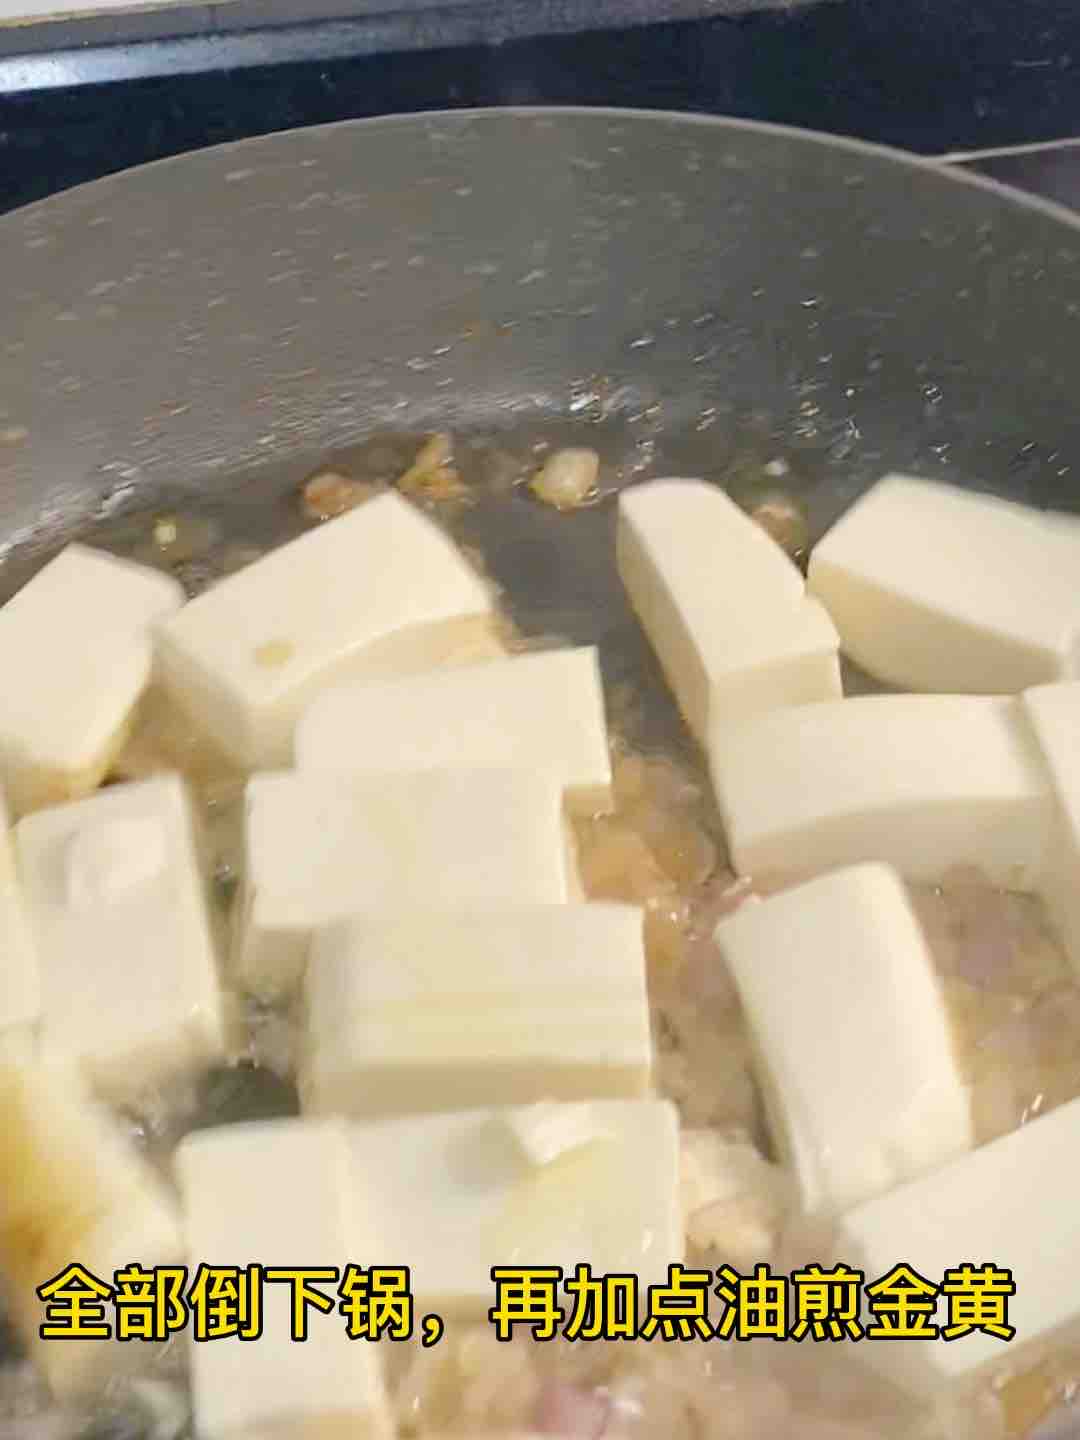 Abalone Braised Tofu, Super Delicious recipe